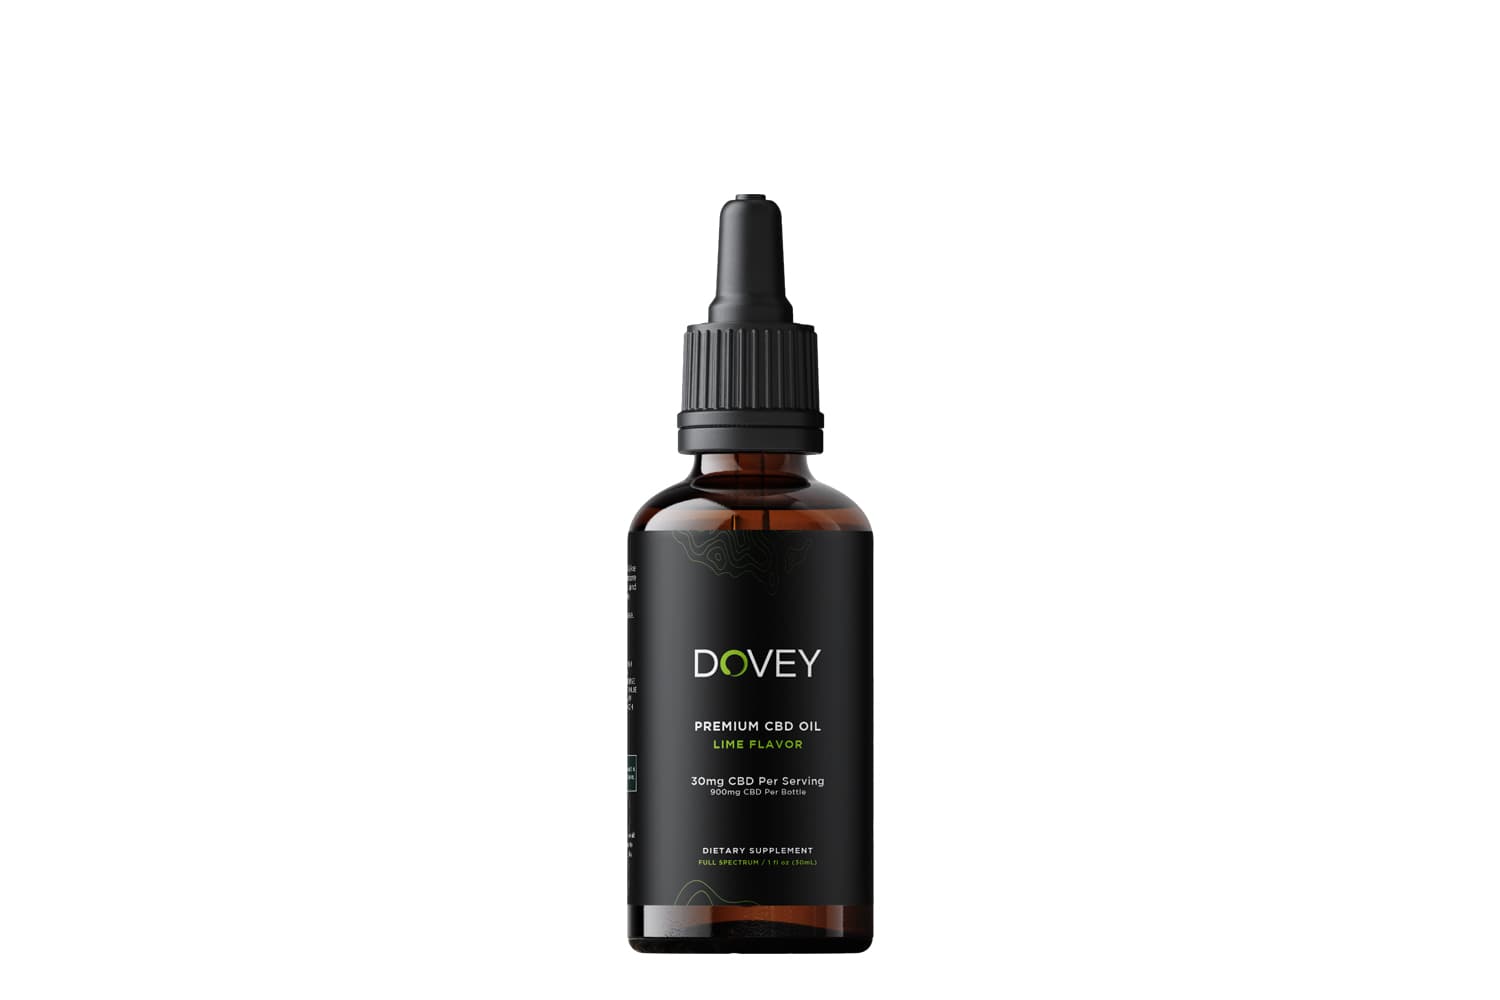 Dovey-lime-900mg-cbd-oil-bottle-only